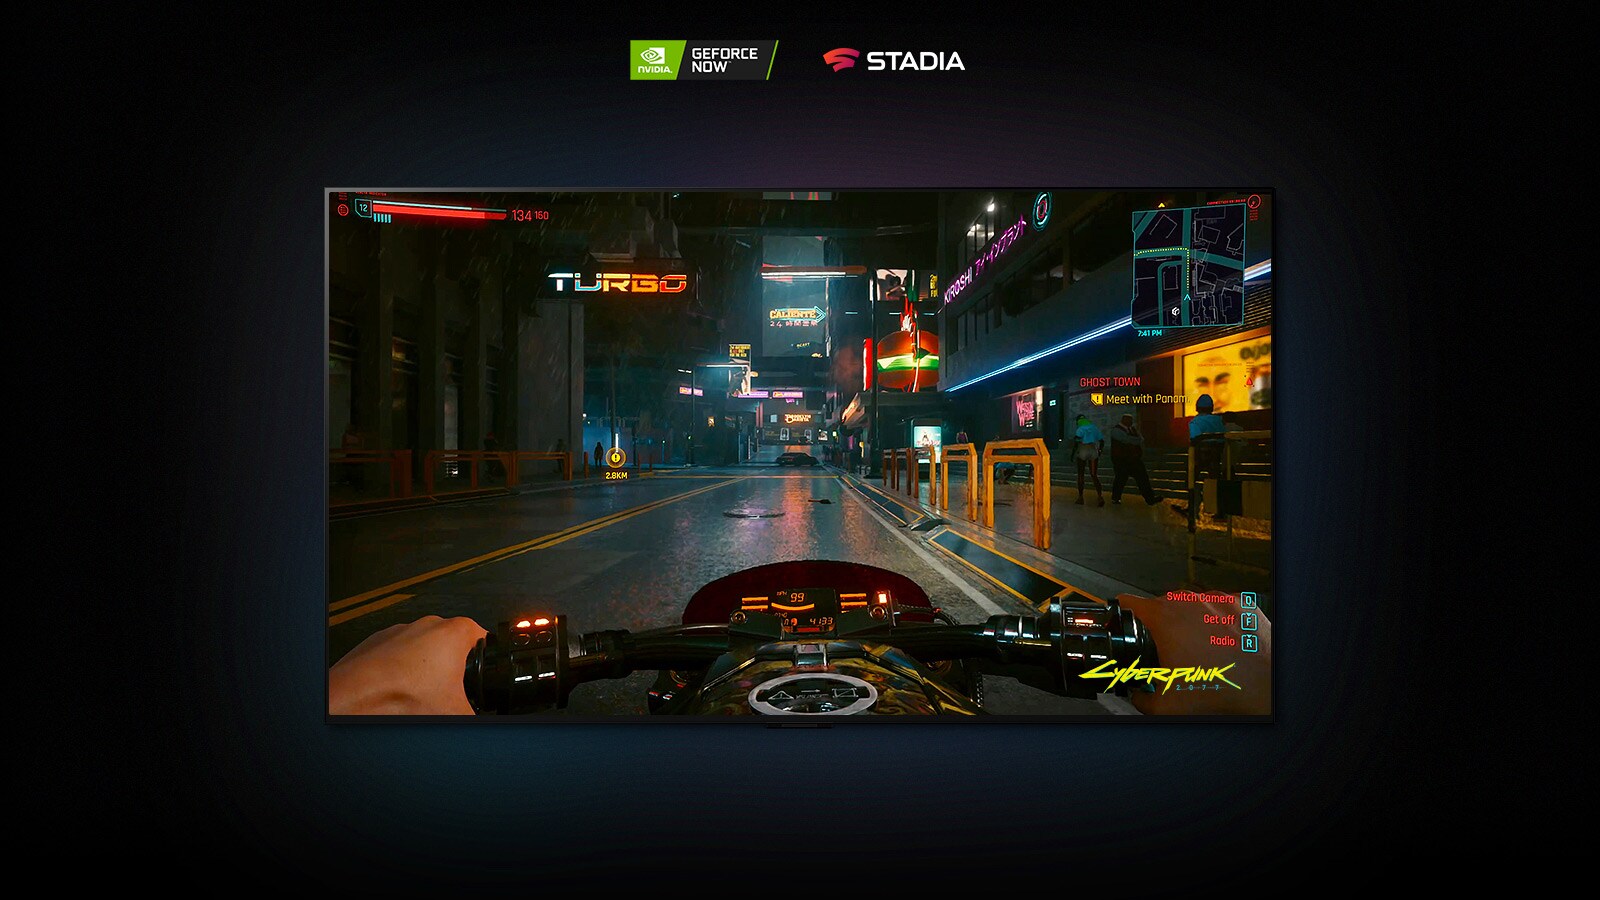 Escena de Cyberpunk 2077 que se muestra en la pantalla de un TV LG OLED, el jugador conduce una moto por una calle iluminada con luces de neón